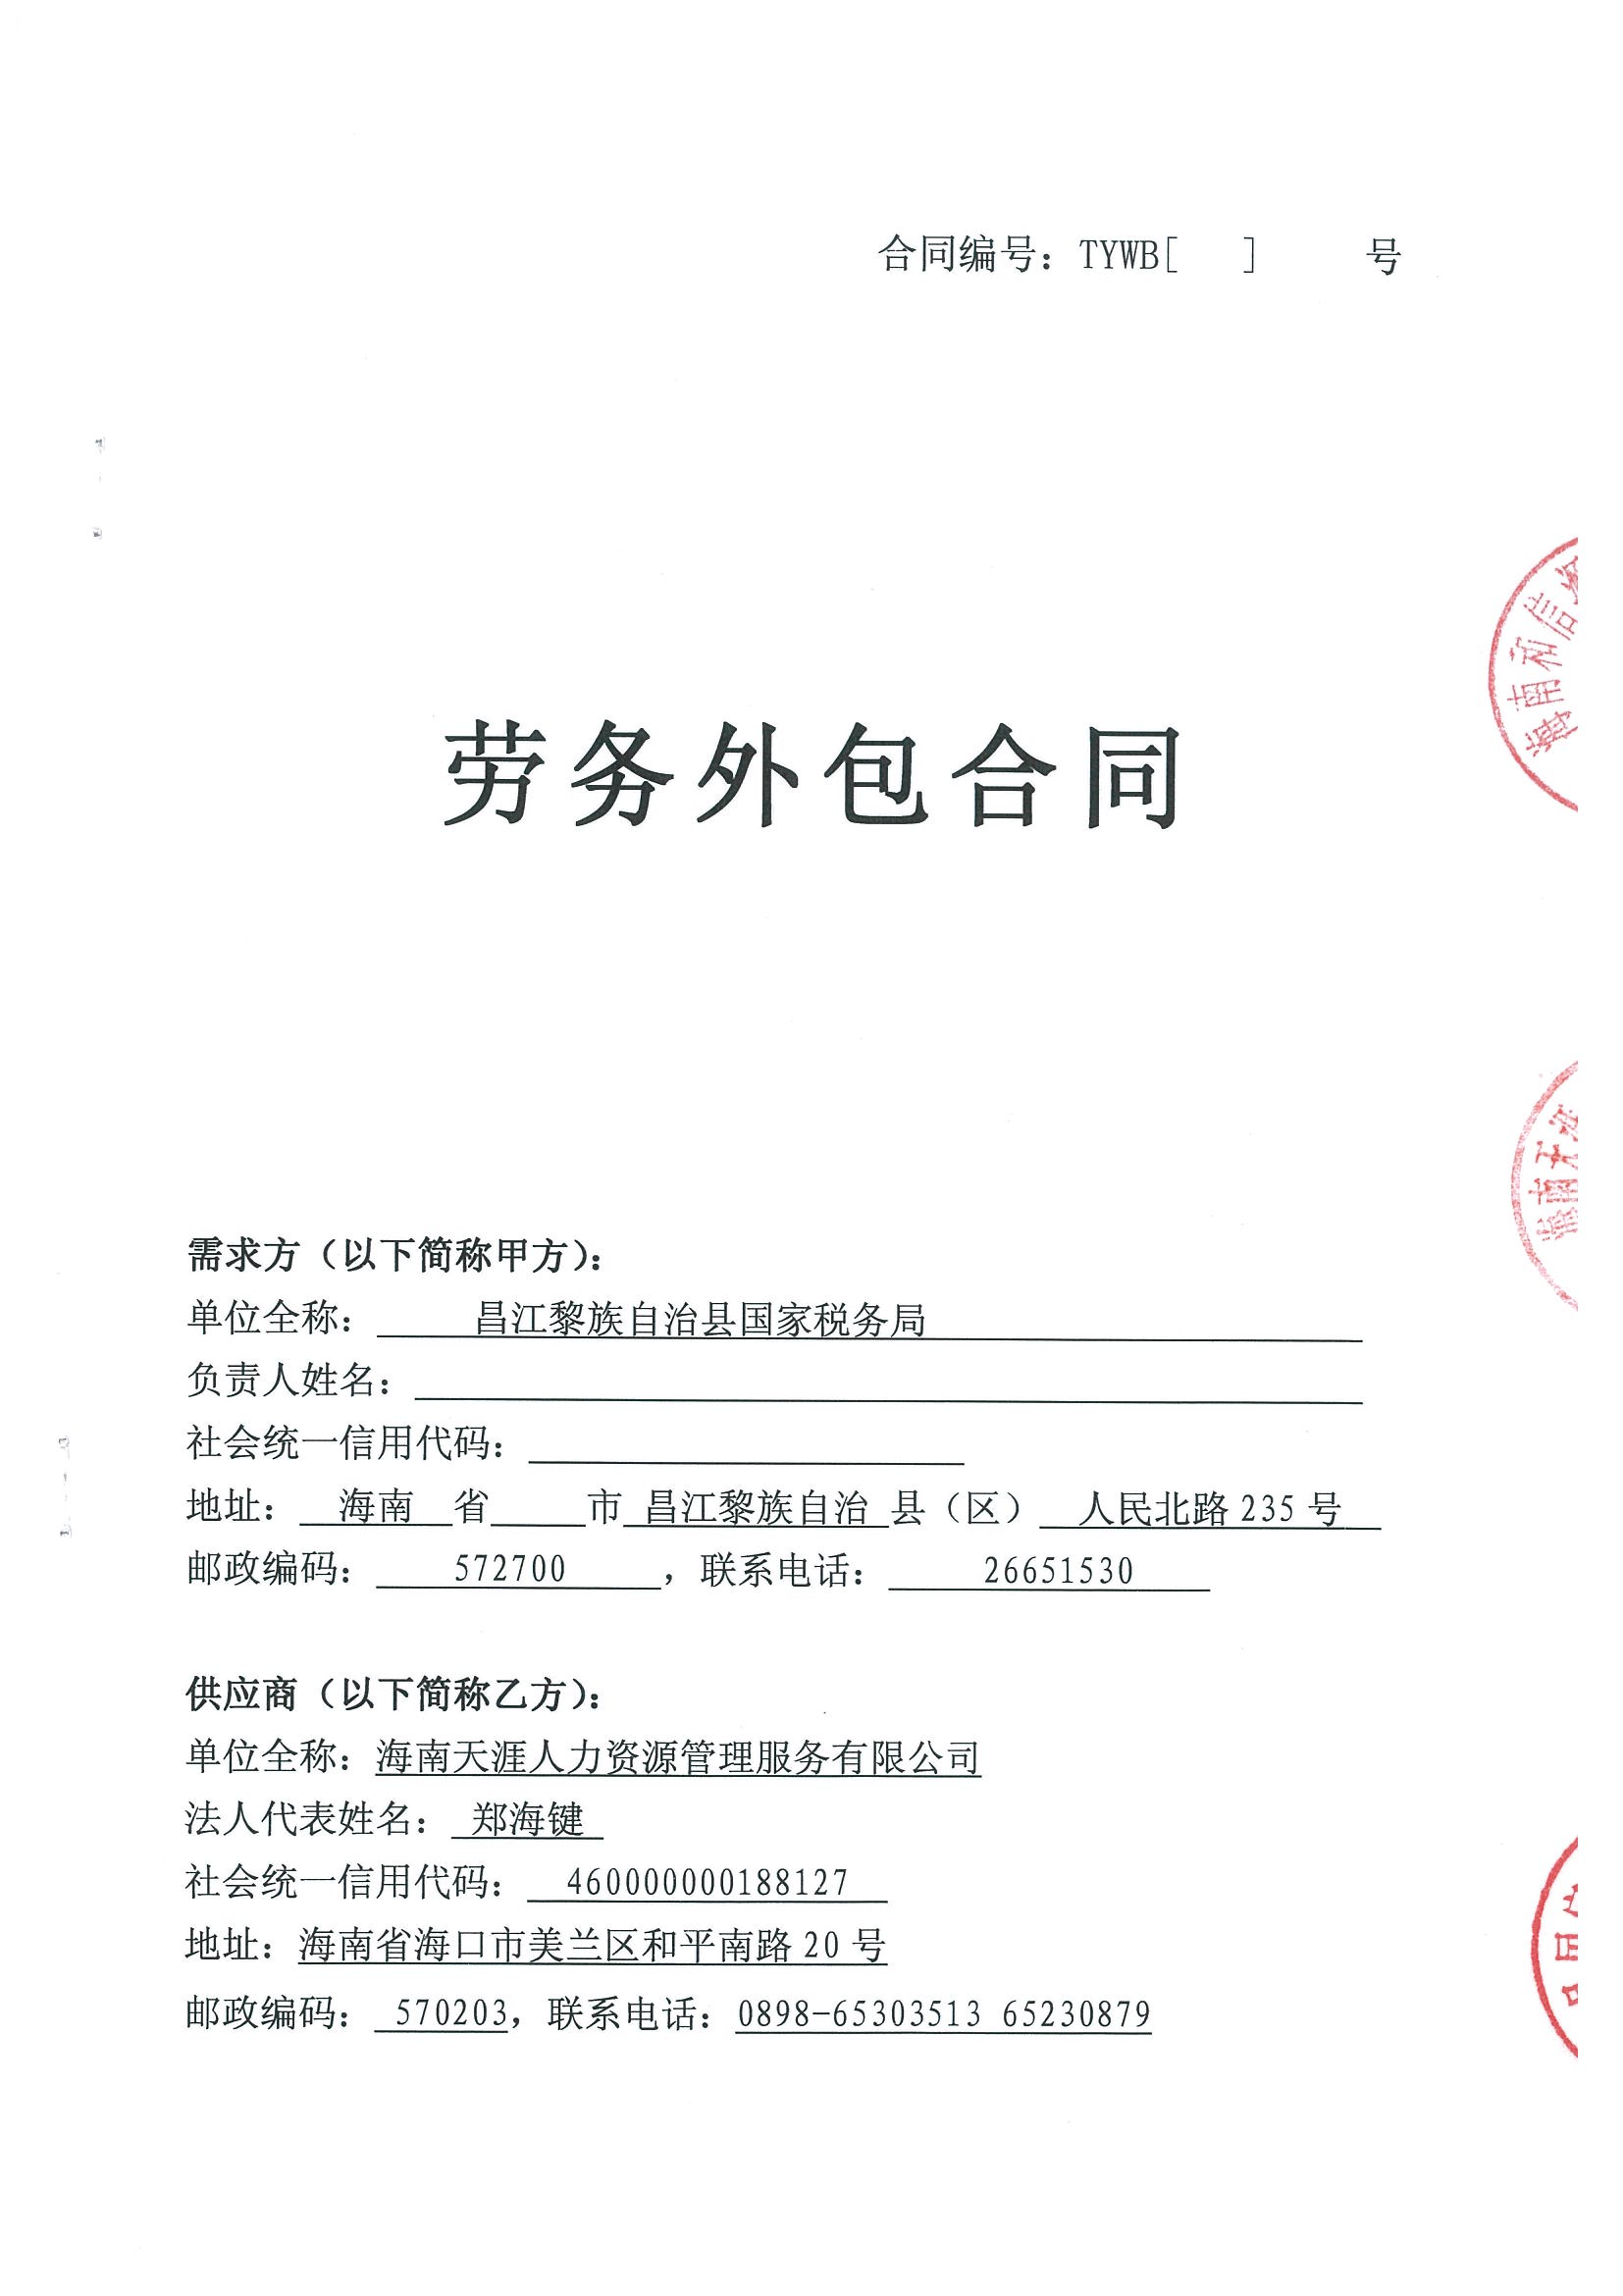 原告李文志被告海南德宏路桥工程有限公司被告北京泰科立高新技术被告